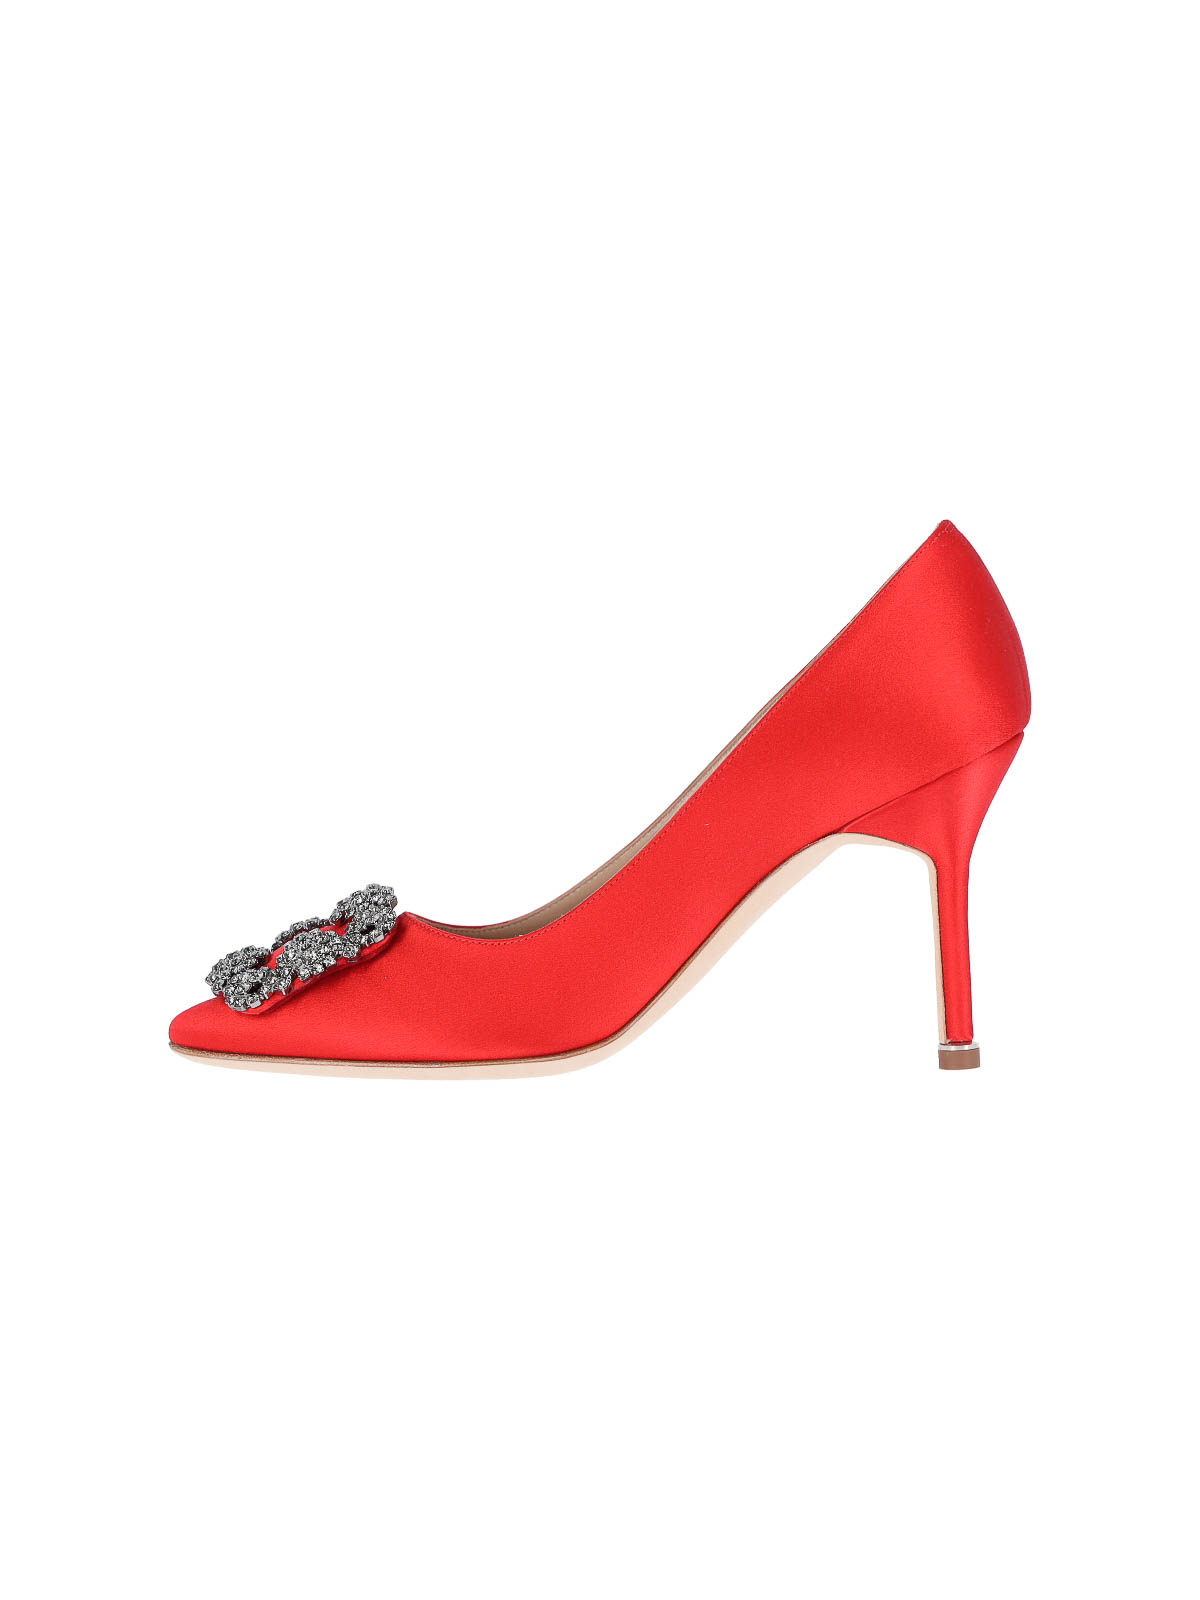 Shop Manolo Blahnik Zapatos De Salón - Hangisi In Red